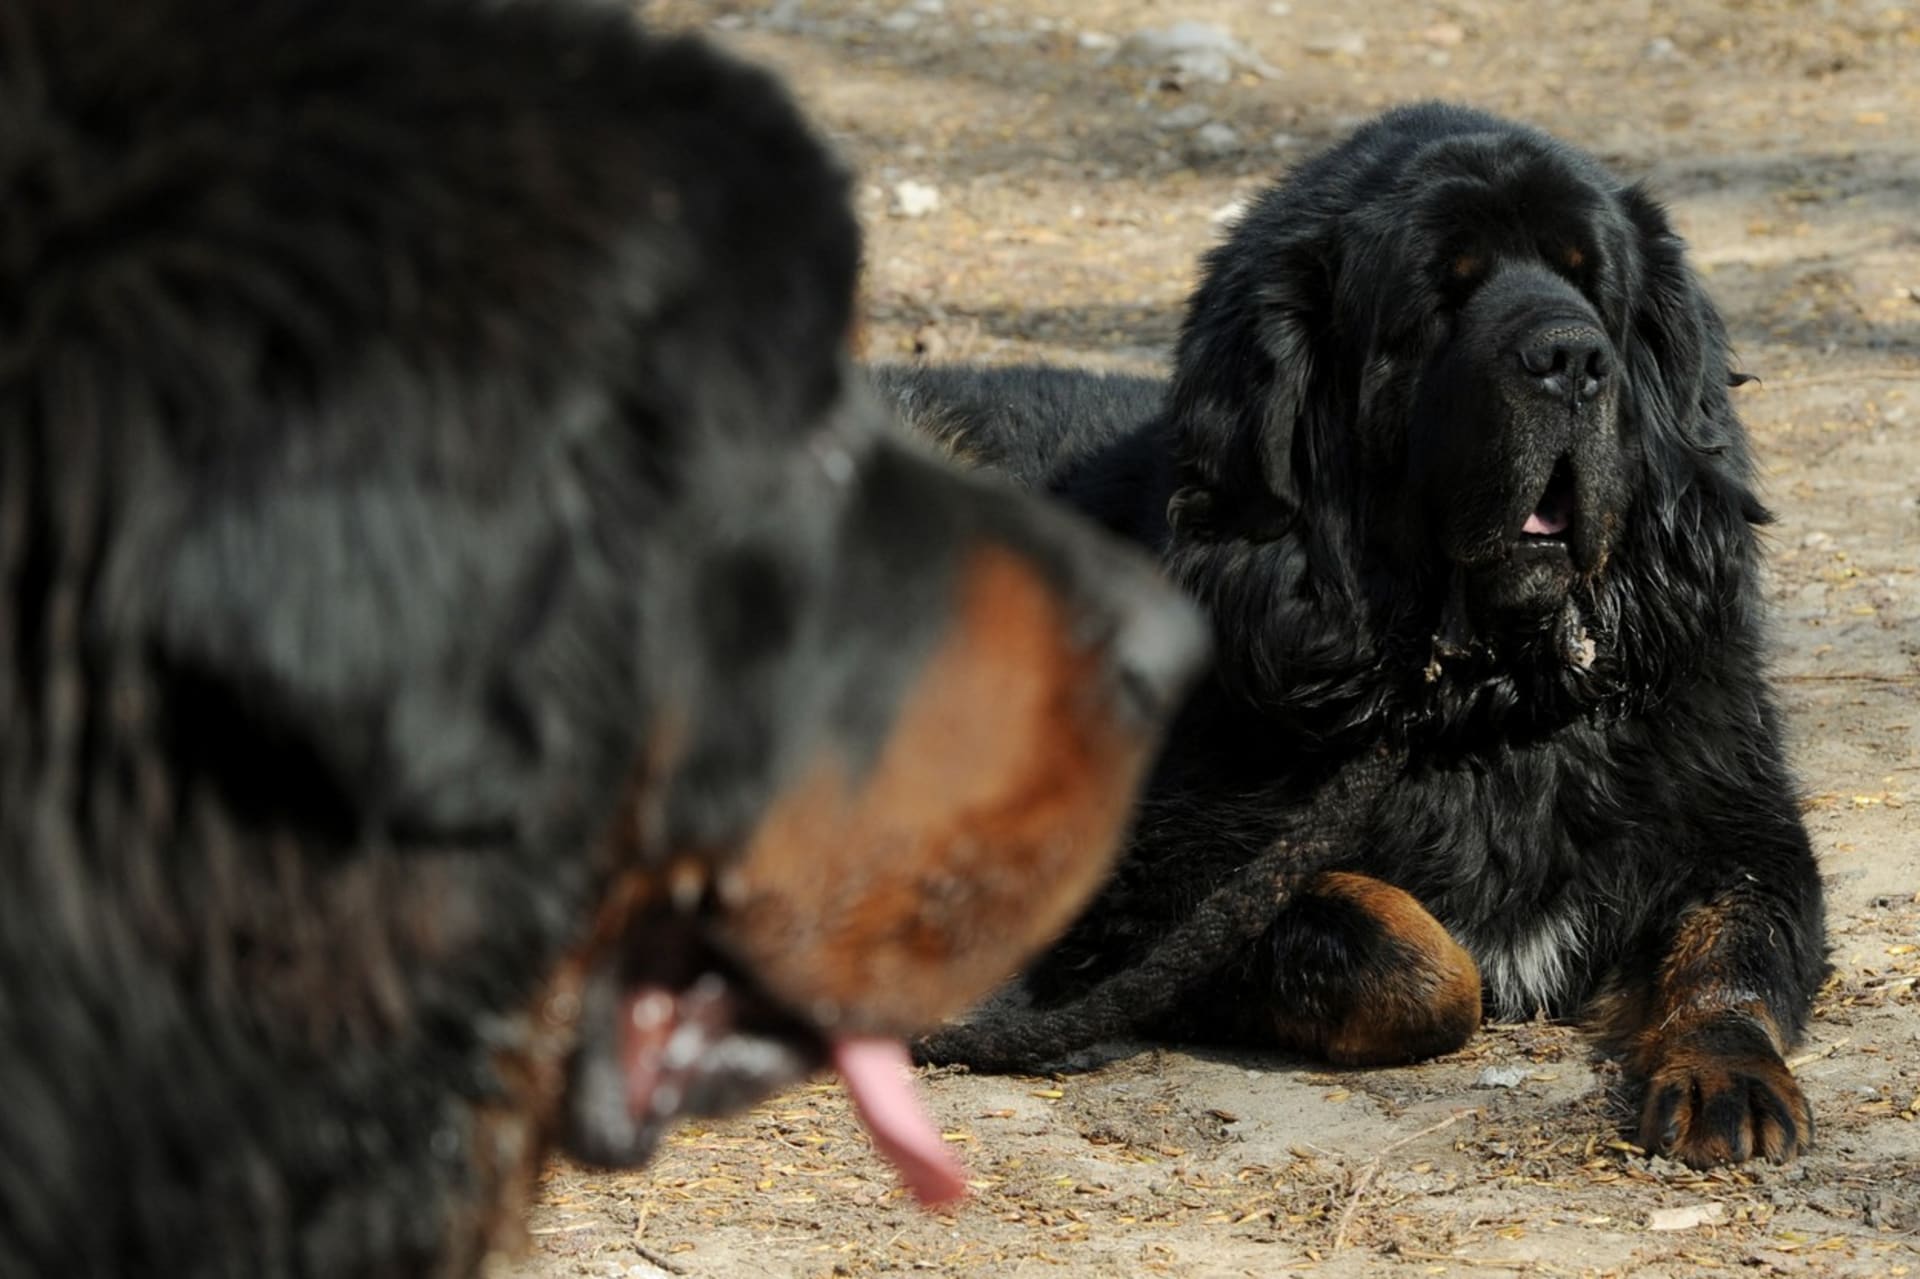 Státní zástupce zastavil stíhání majitele tibetské dogy, která pokousala ženu v Křižanech na Liberecku. (Ilustrační foto)